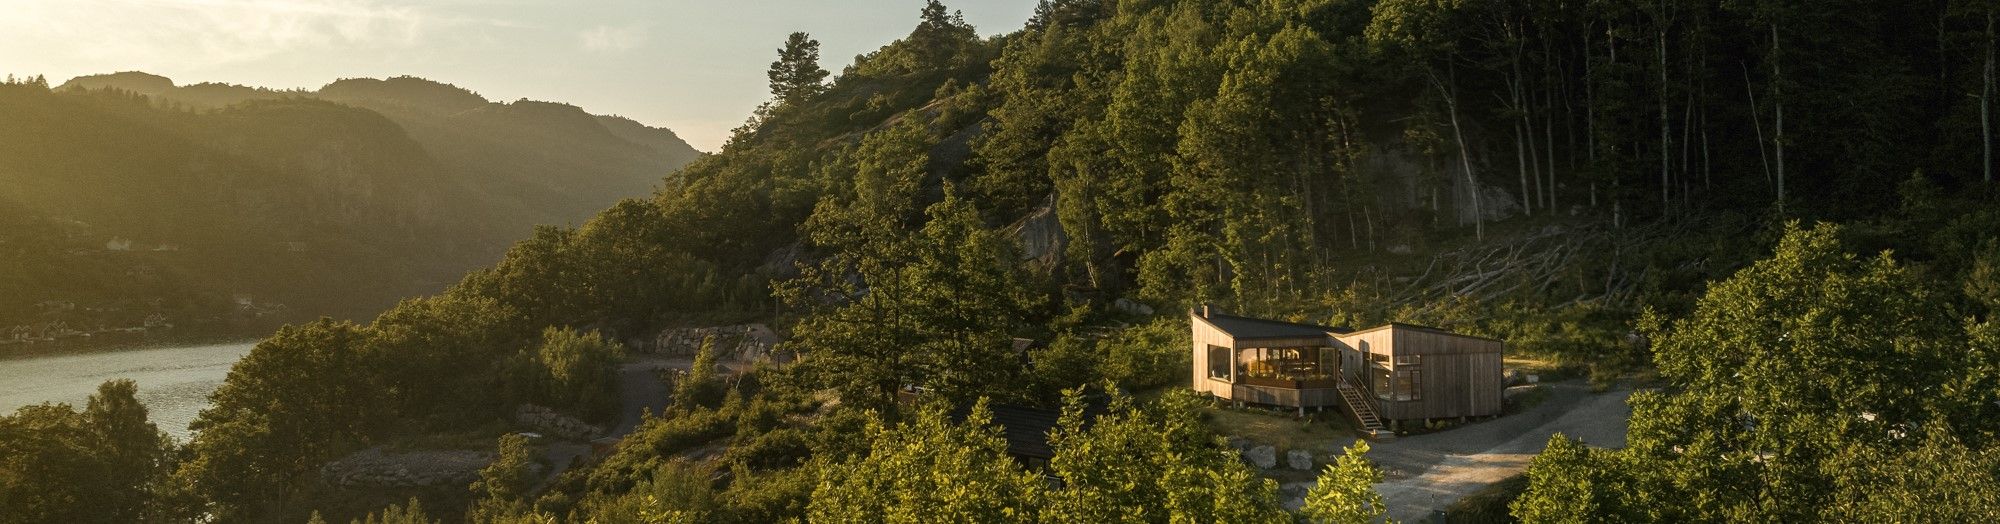 Une architecte choisit le bois Kebony pour le bardage de son chalet, situé au bord d’un fjord en Norvège